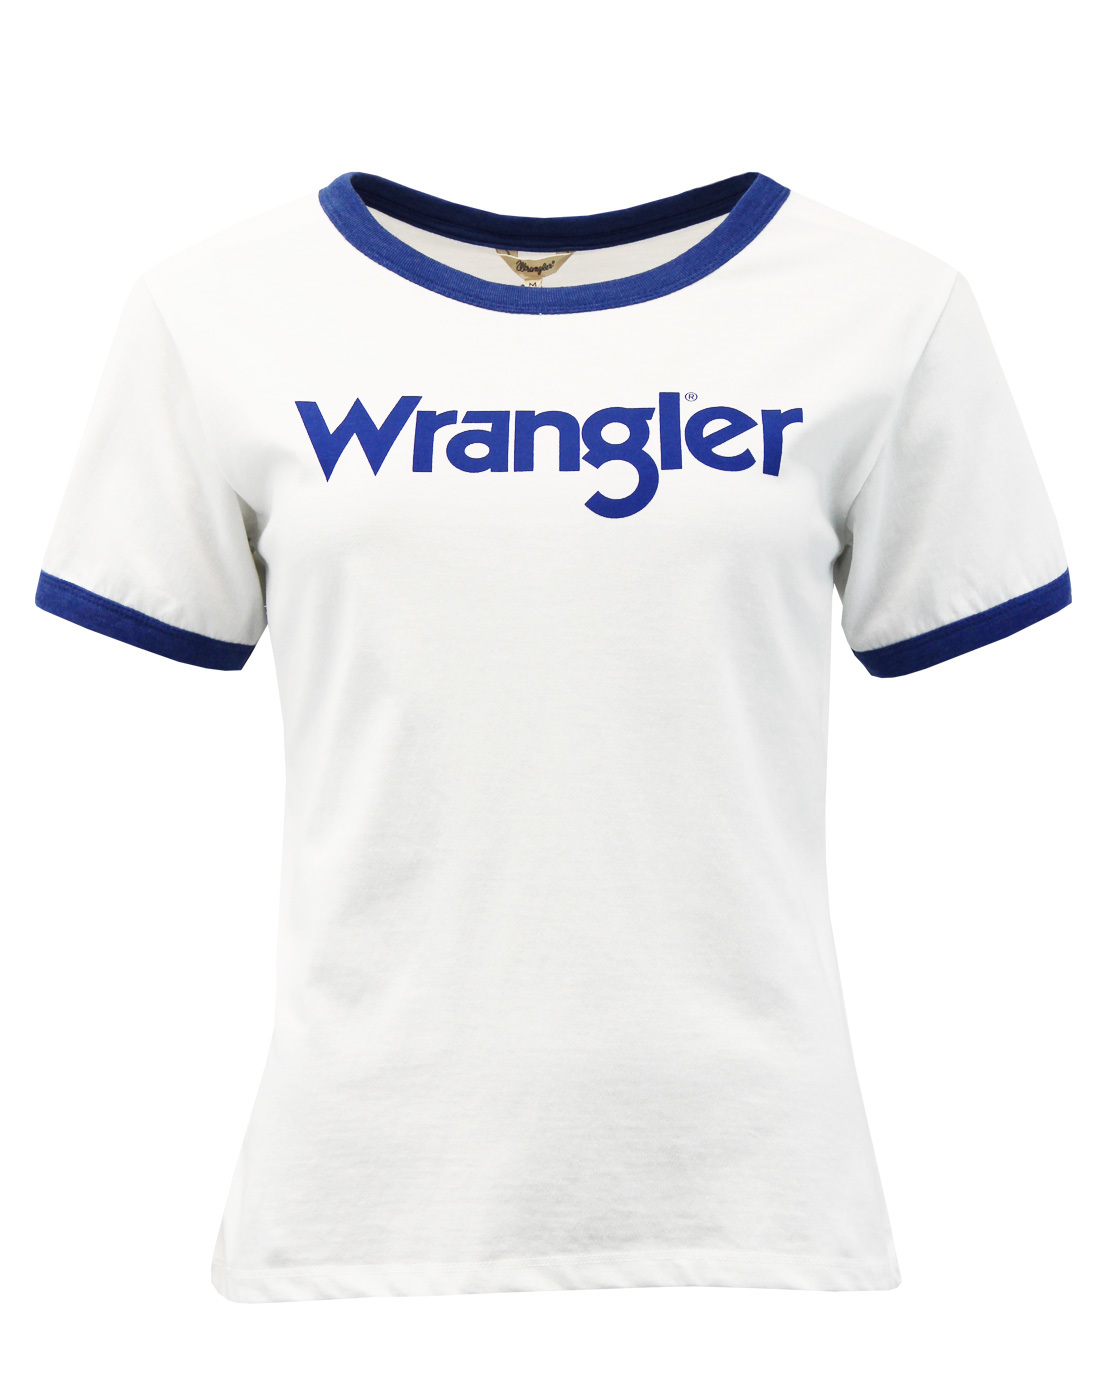 Kabel WRANGLER Women's Retro 1970s Ringer T-shirt